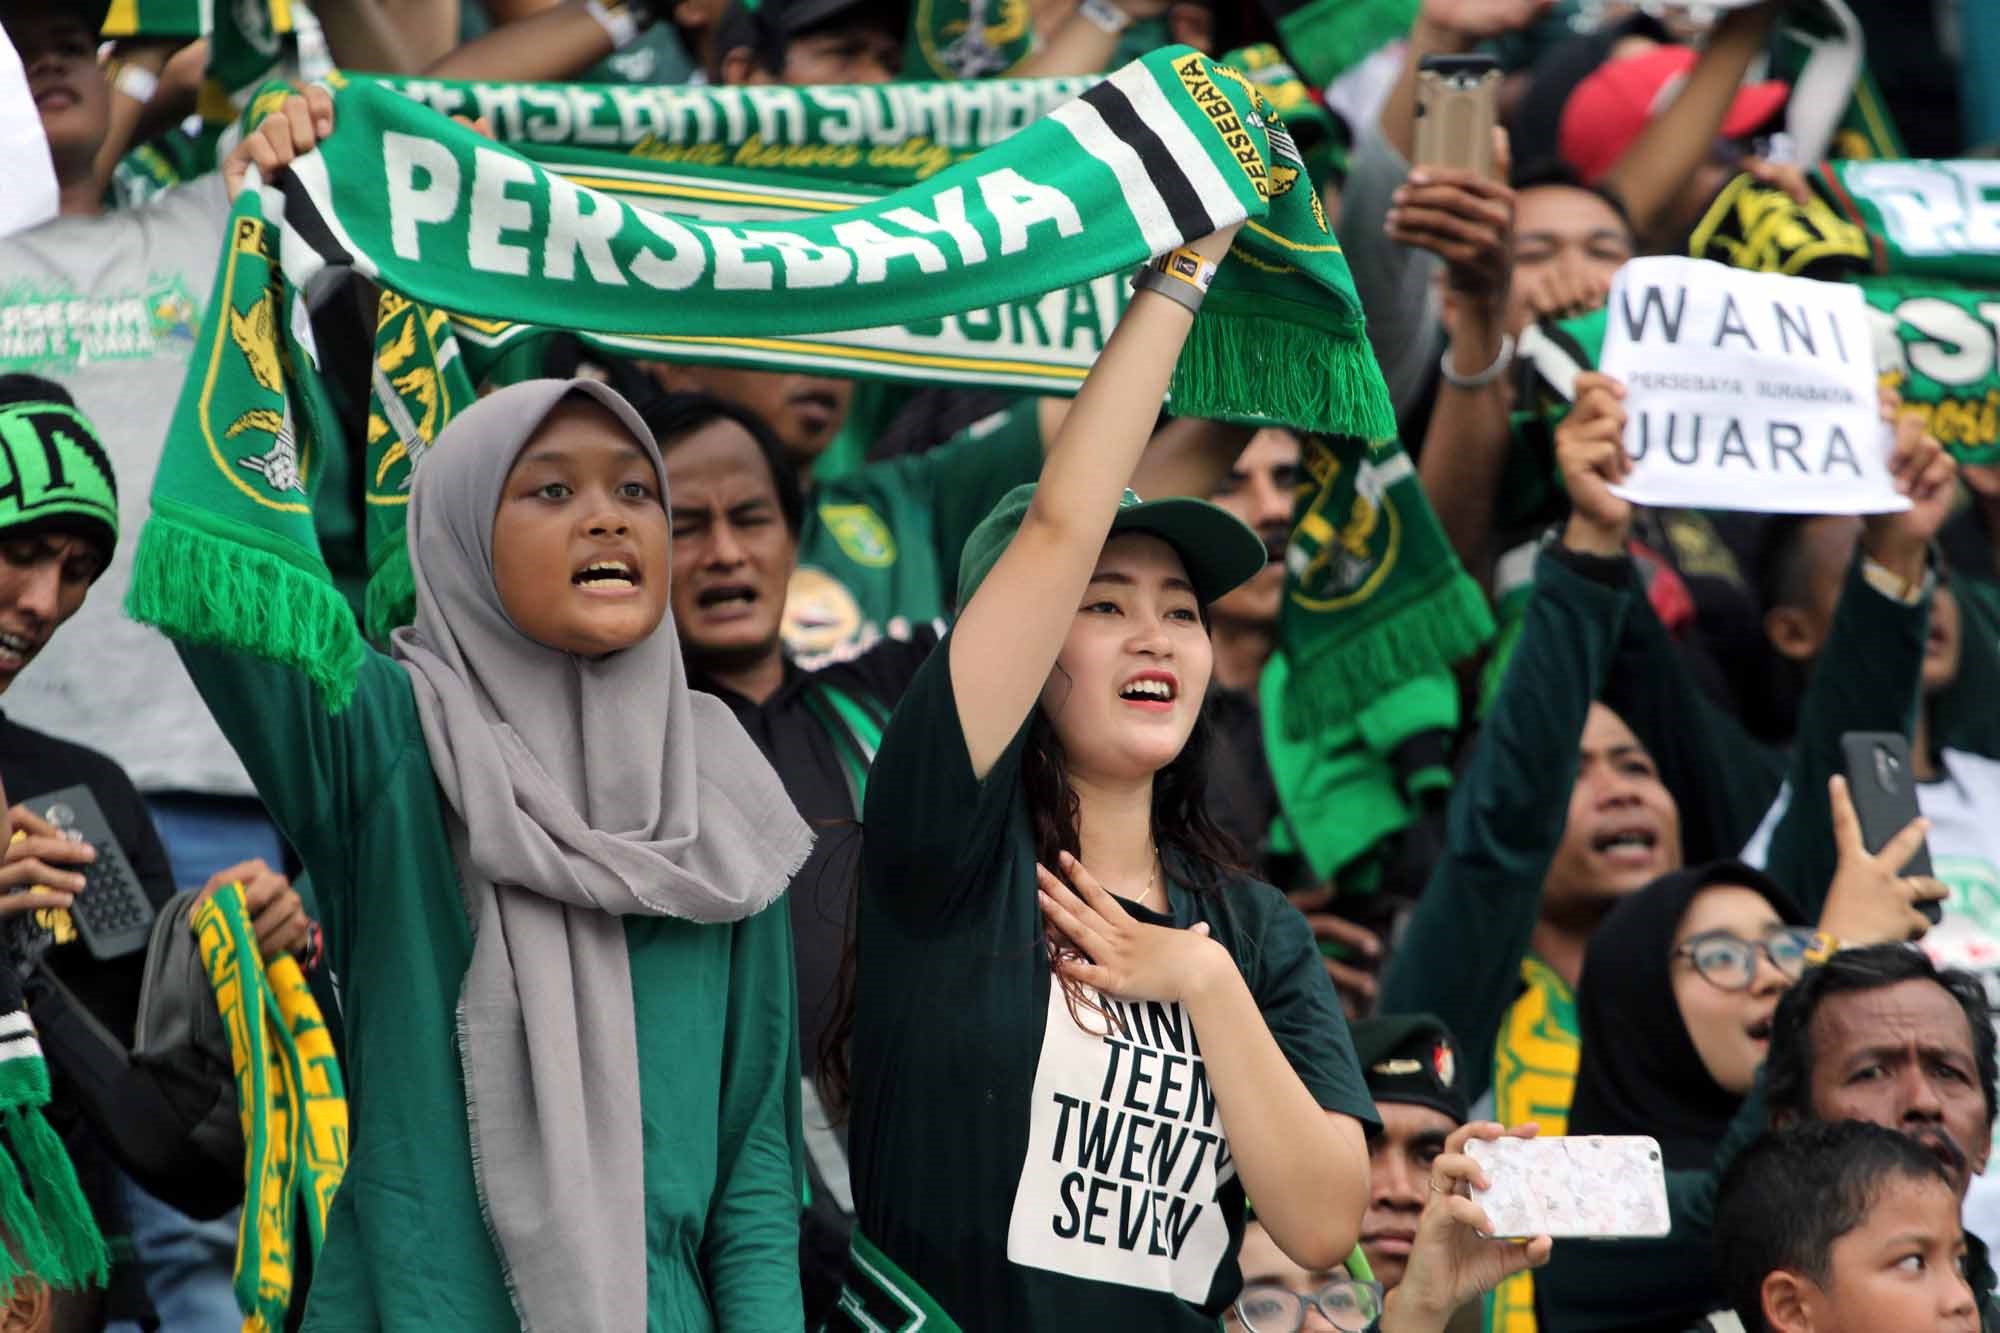 Bonek wanita (bonita) saat mendukung Persebaya di Stadion GBT Surabaya. (ft/clicks)